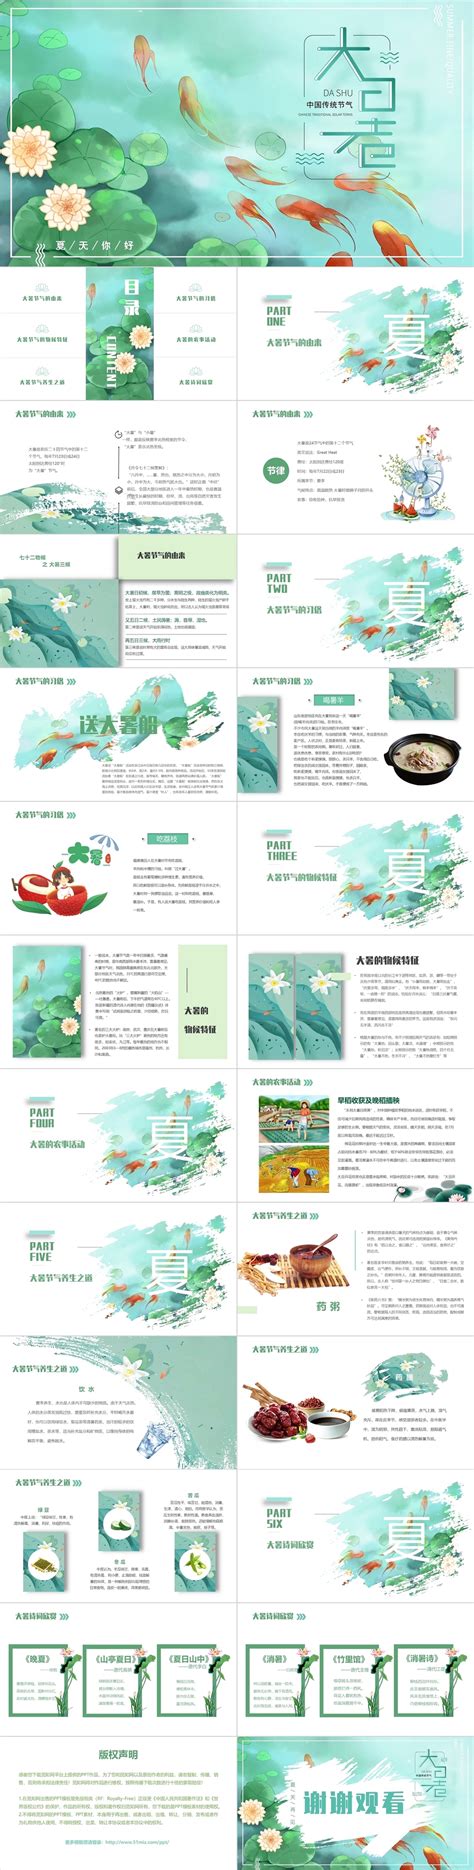 绿色清新中国风插画二十四节气之大暑节气介绍动态PPT模板-椰子办公